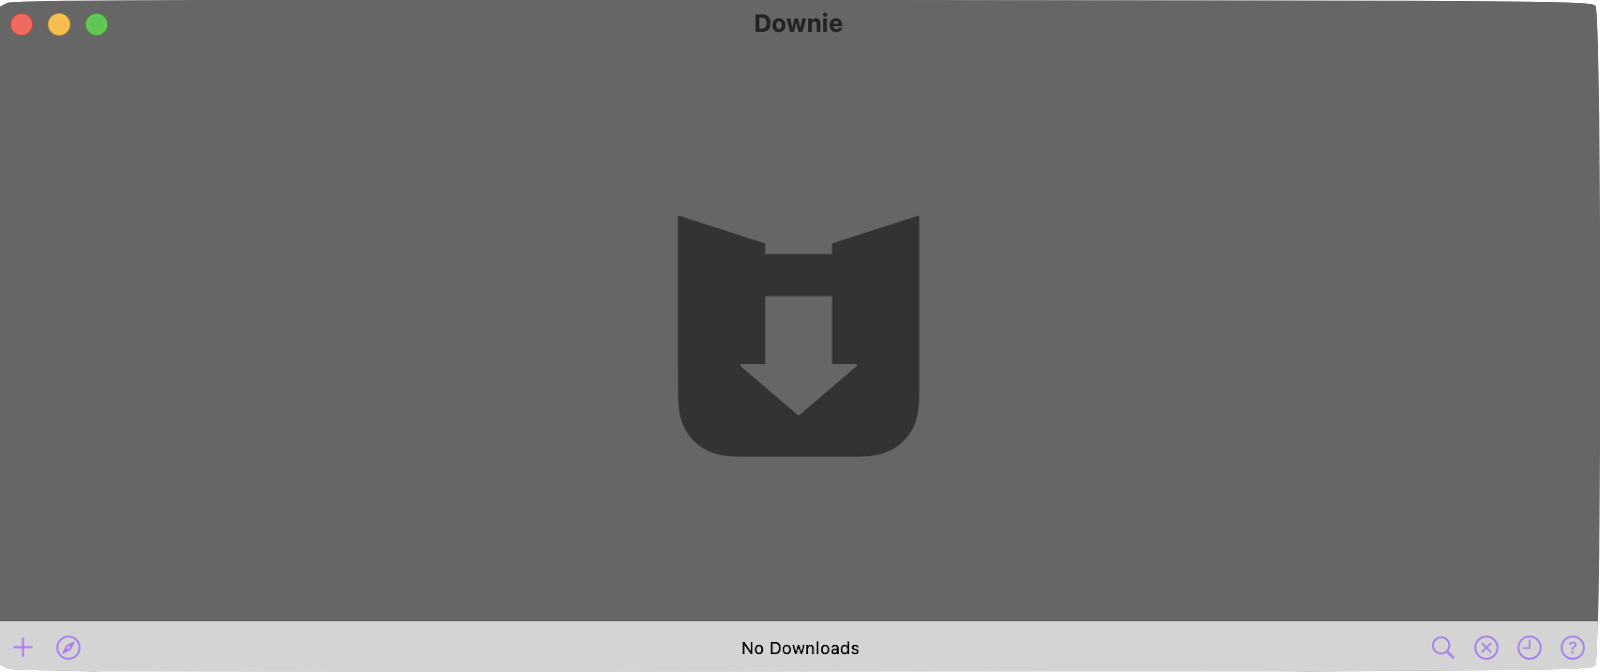 Downie 4 interface